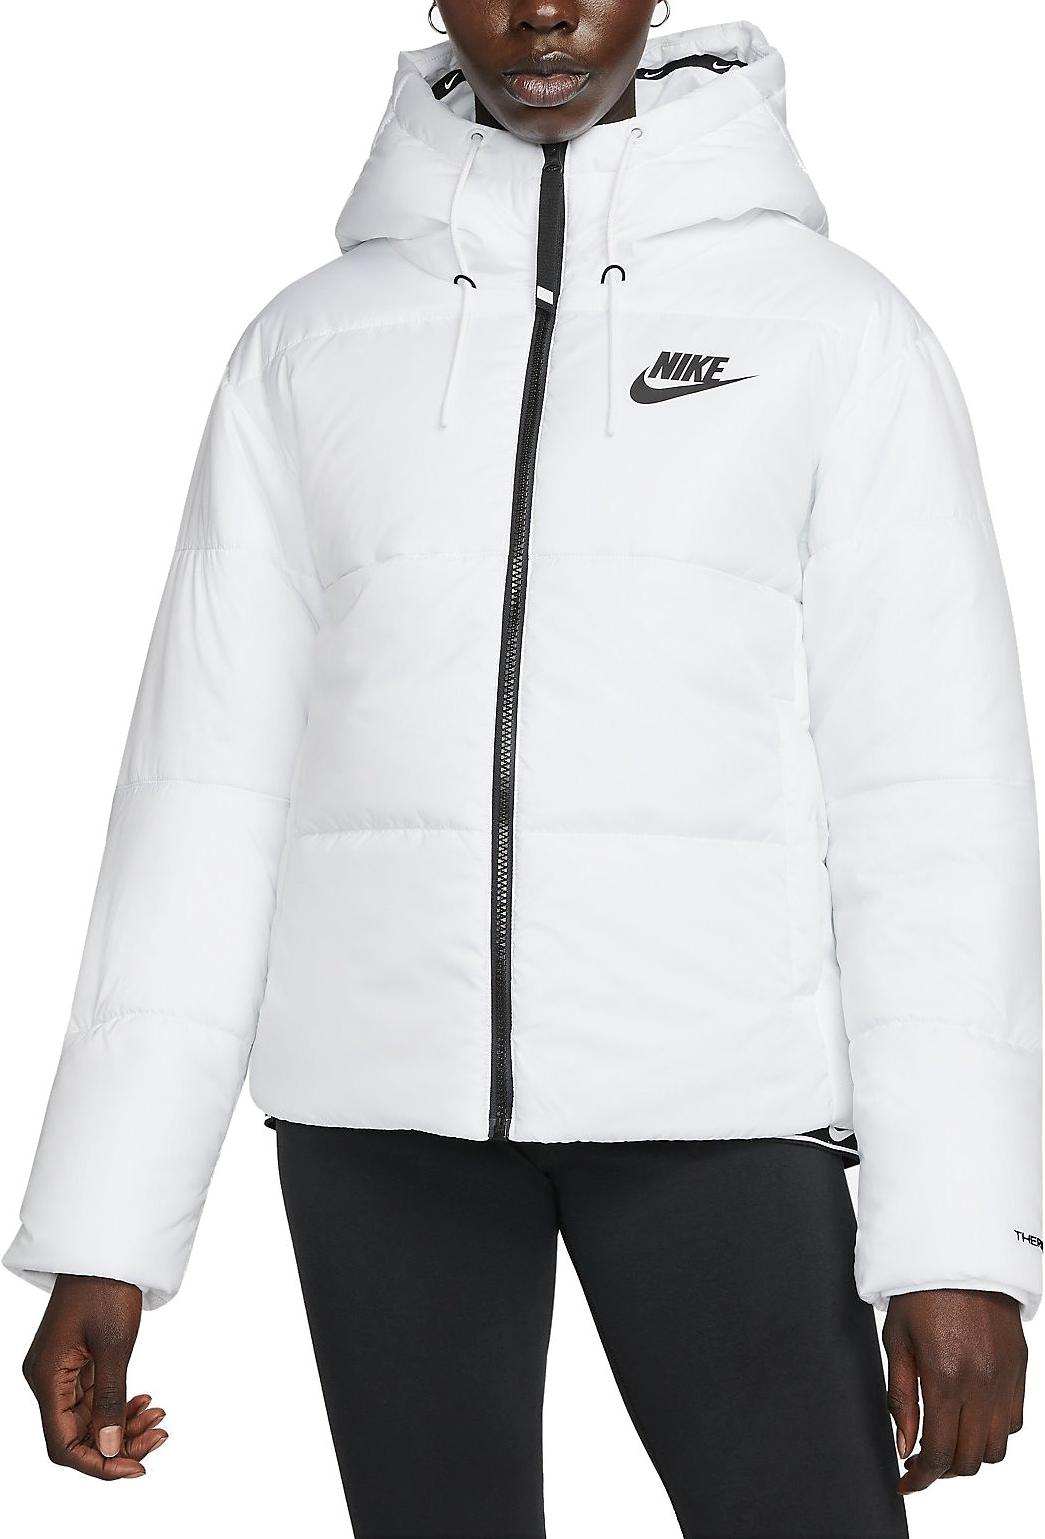 Hooded Nike Sportswear Therma-FIT Women s Jacket Repel